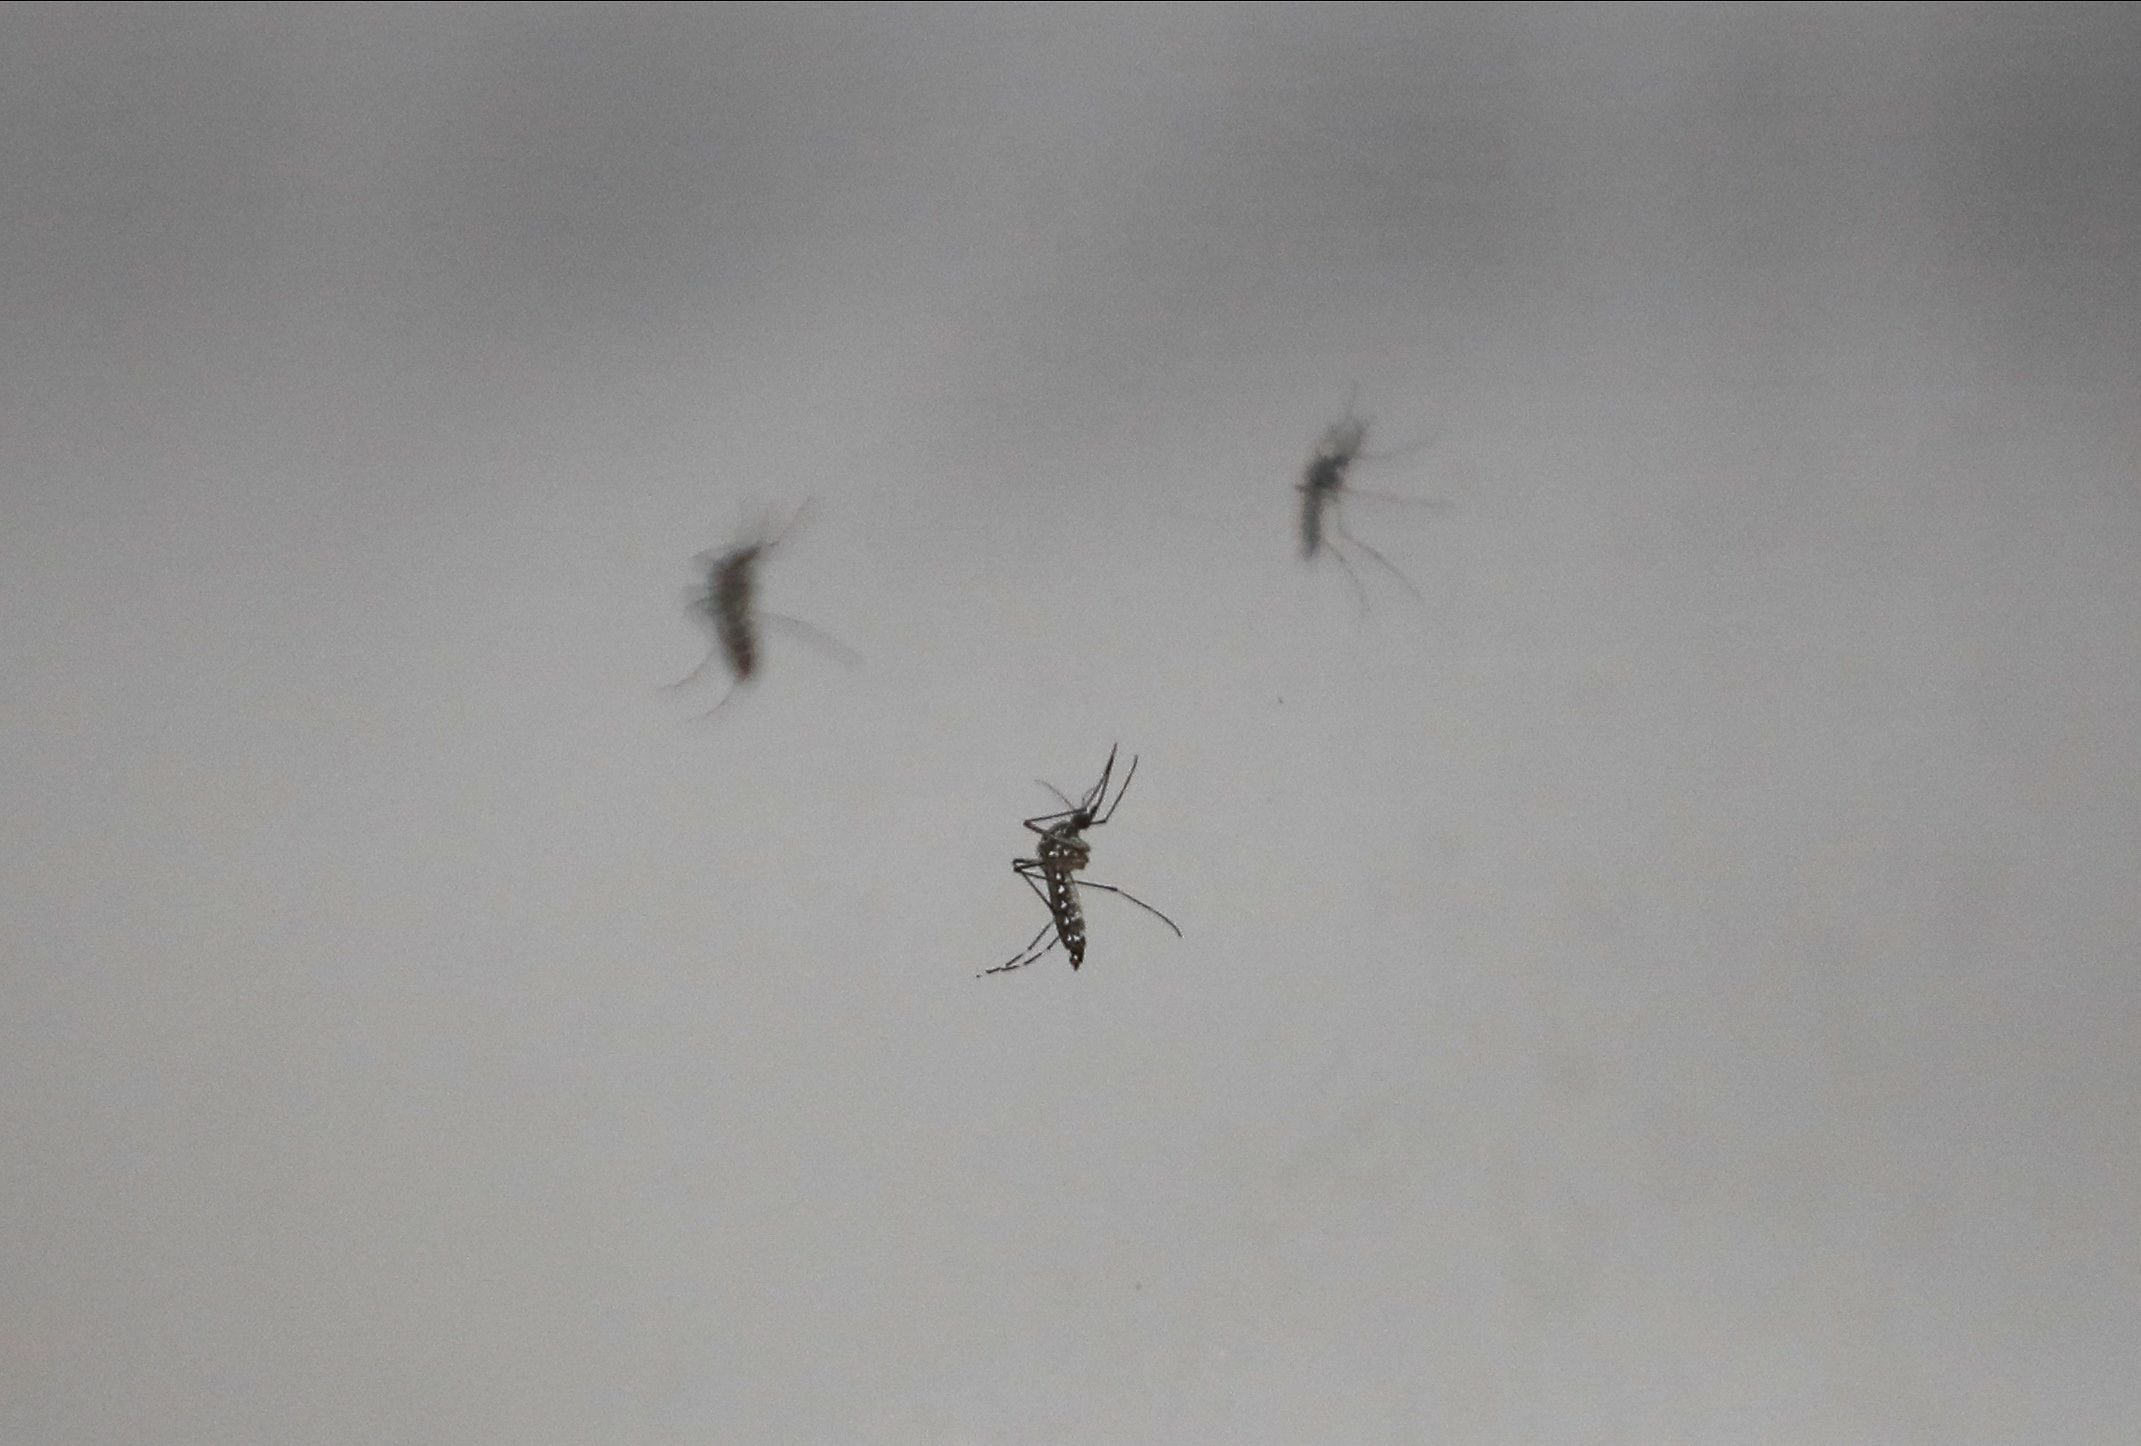 Además del uso de repelente, una de las principales medidas de prevención ante el dengue es la eliminación de ciraderos de mosquitos /REUTERS/Agustin Marcarian